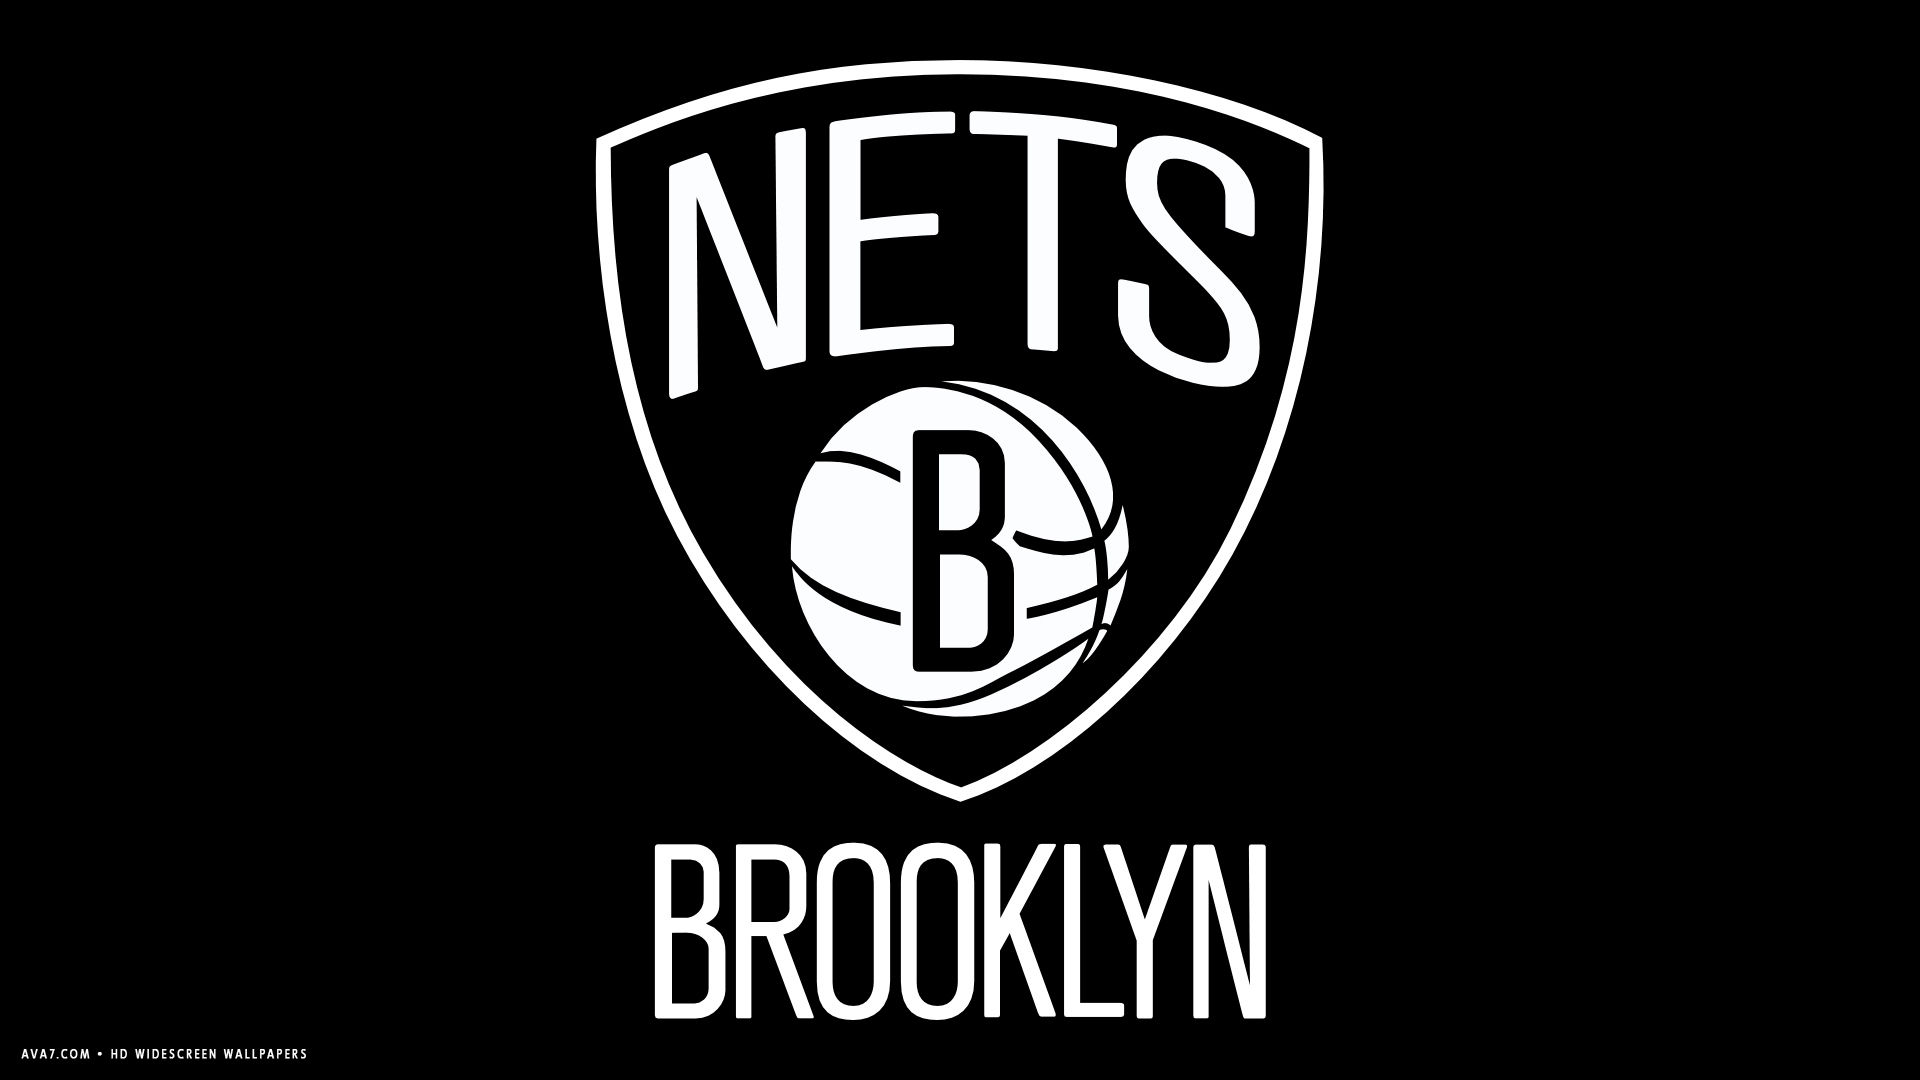 brooklyn nets nba basketball team hd widescreen wallpaper basketball